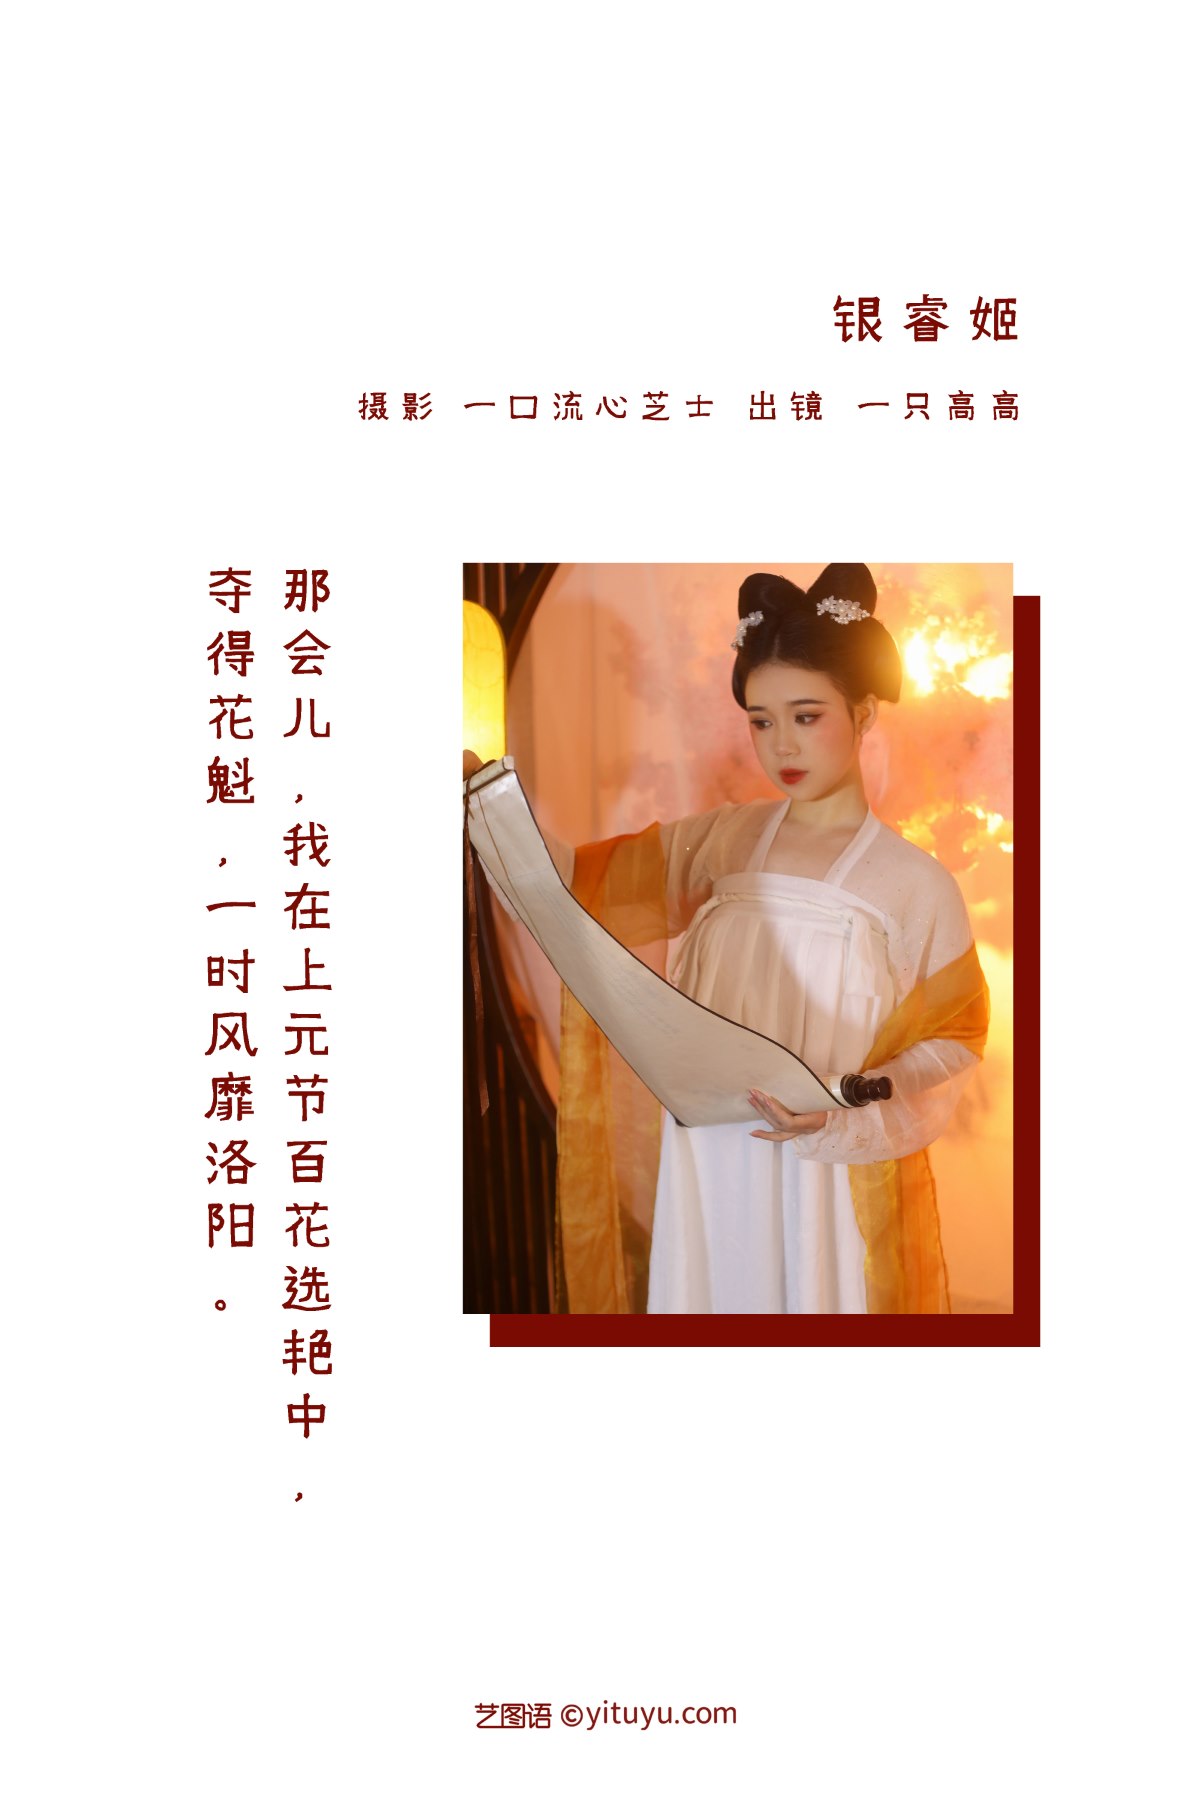 YiTuYu艺图语 Vol 2390 Yi Zhi Gao Gao 0001 6422149552.jpg